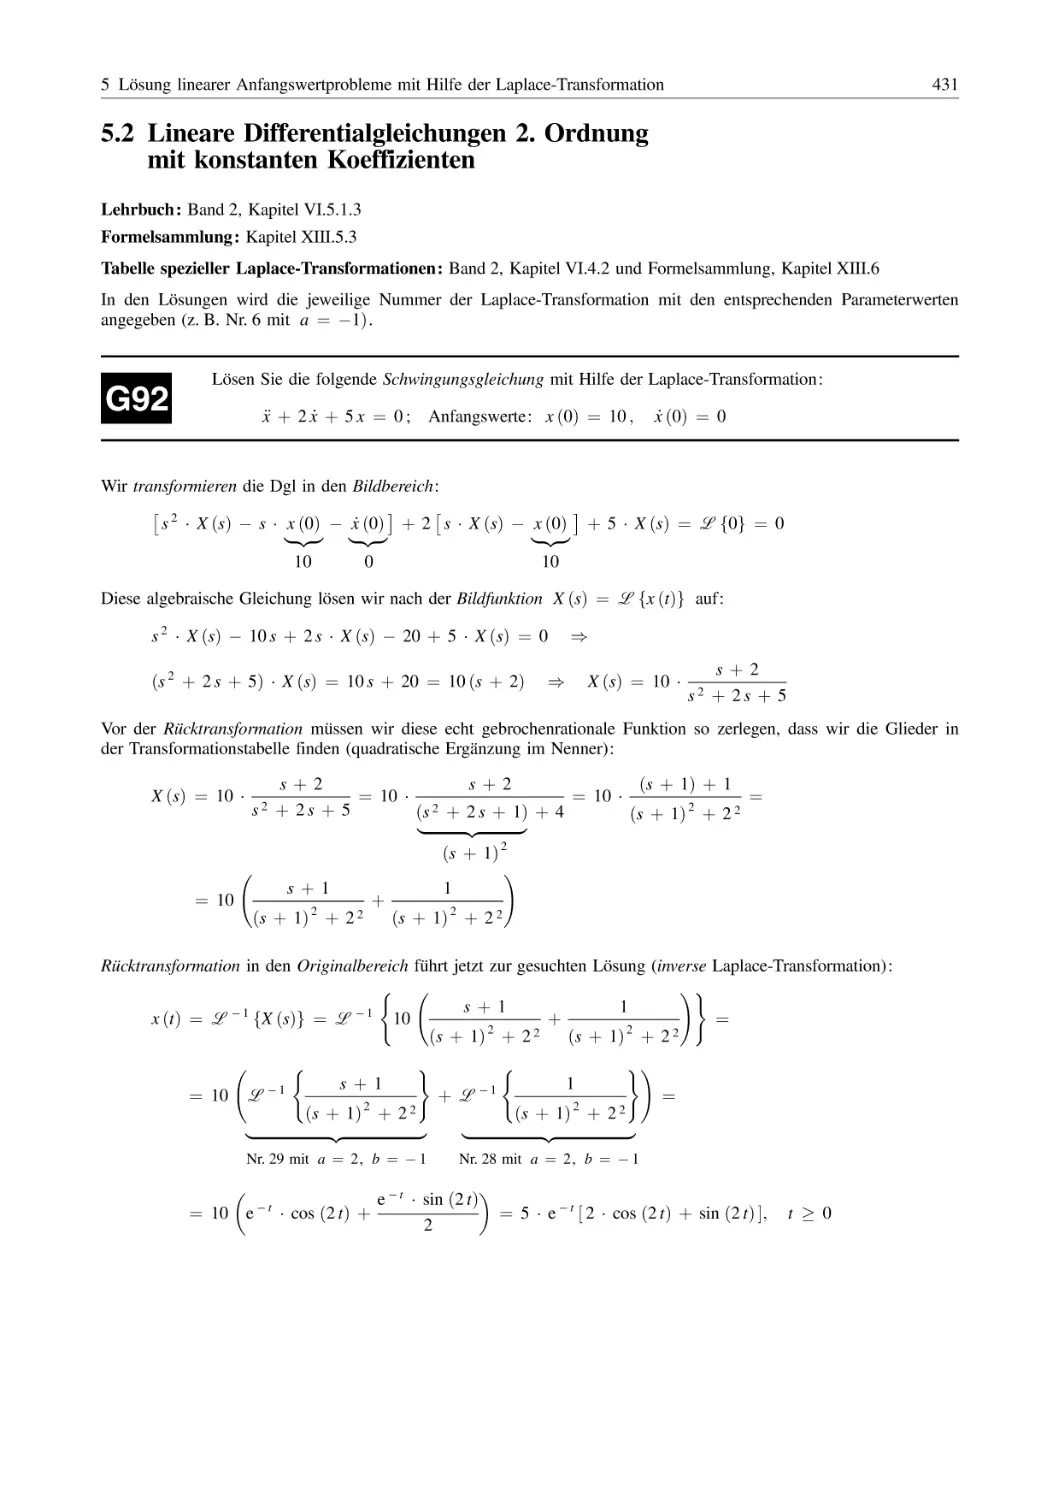 5.2 Lineare Differentialgleichungen 2. Ordnung mit konstanten Koeffizienten